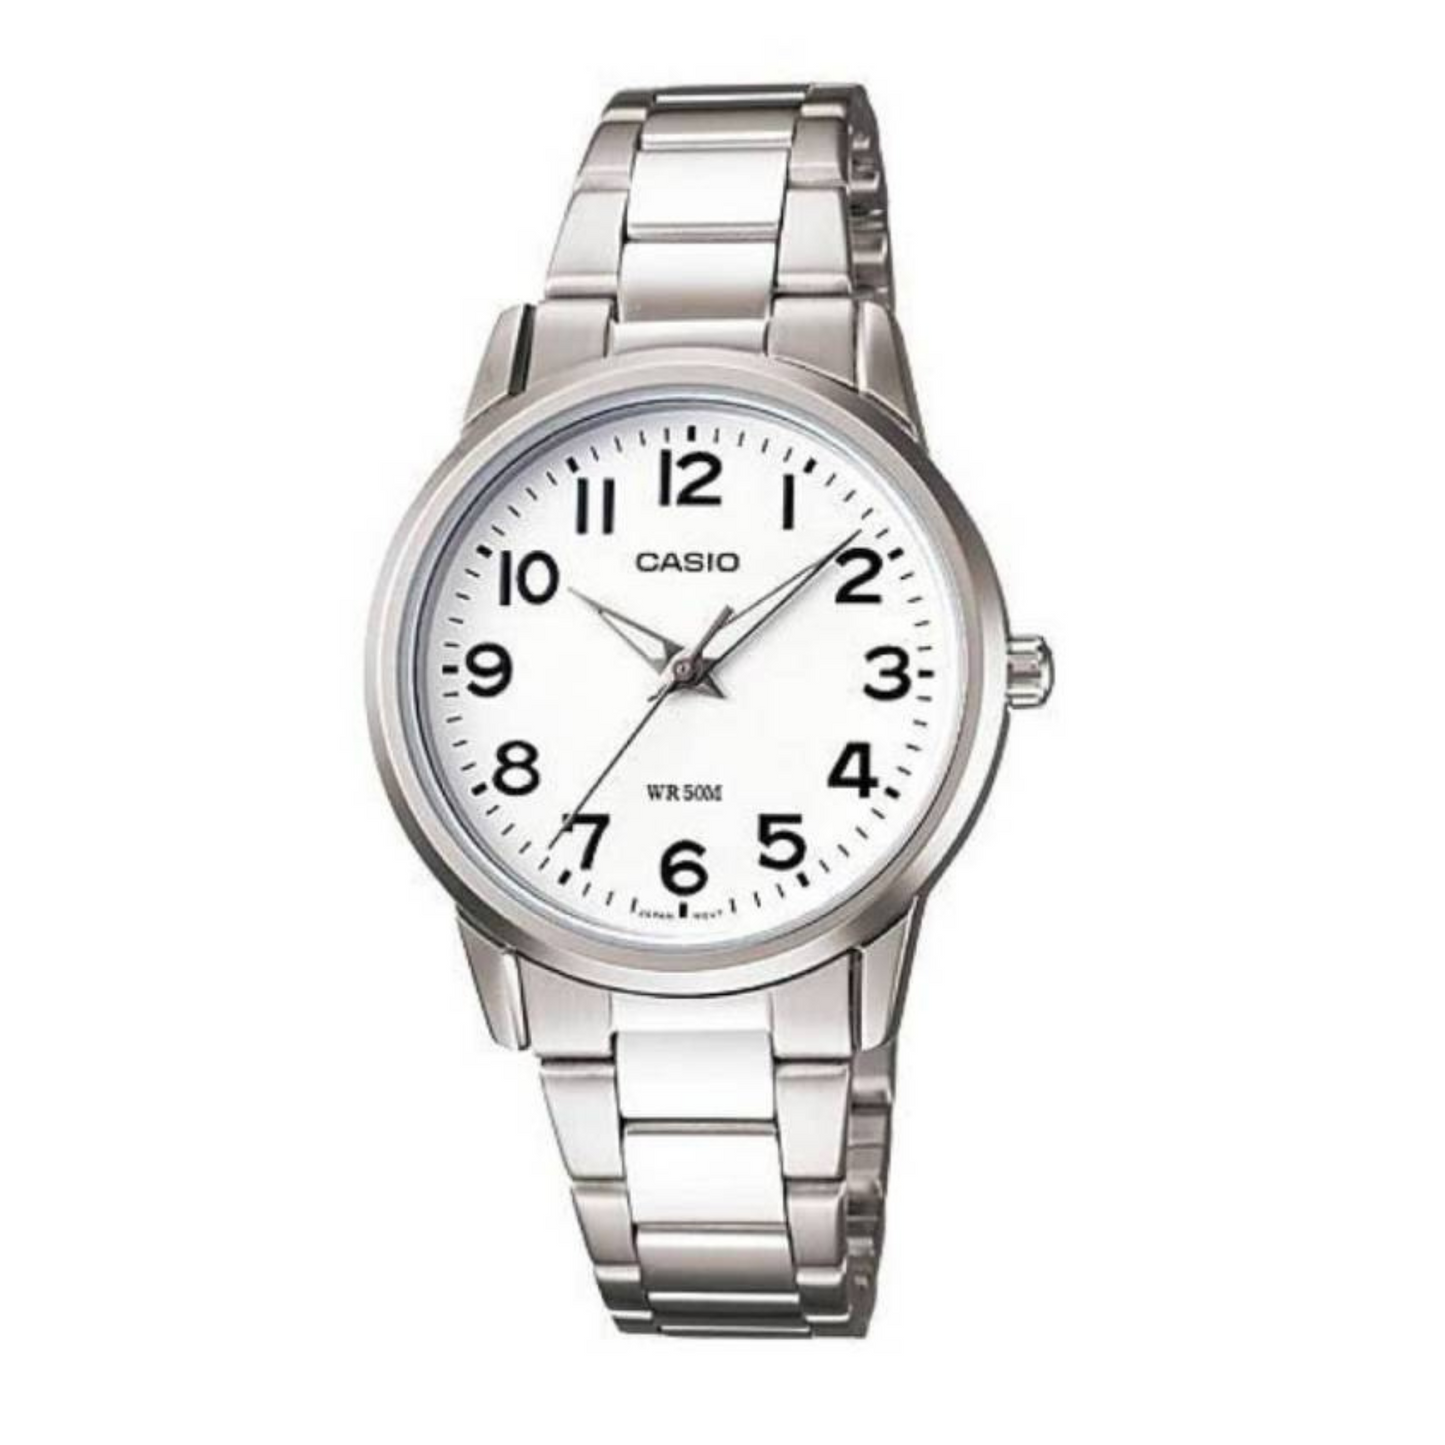 Reloj Casio mujer Modelo LTP-1303D-7BV